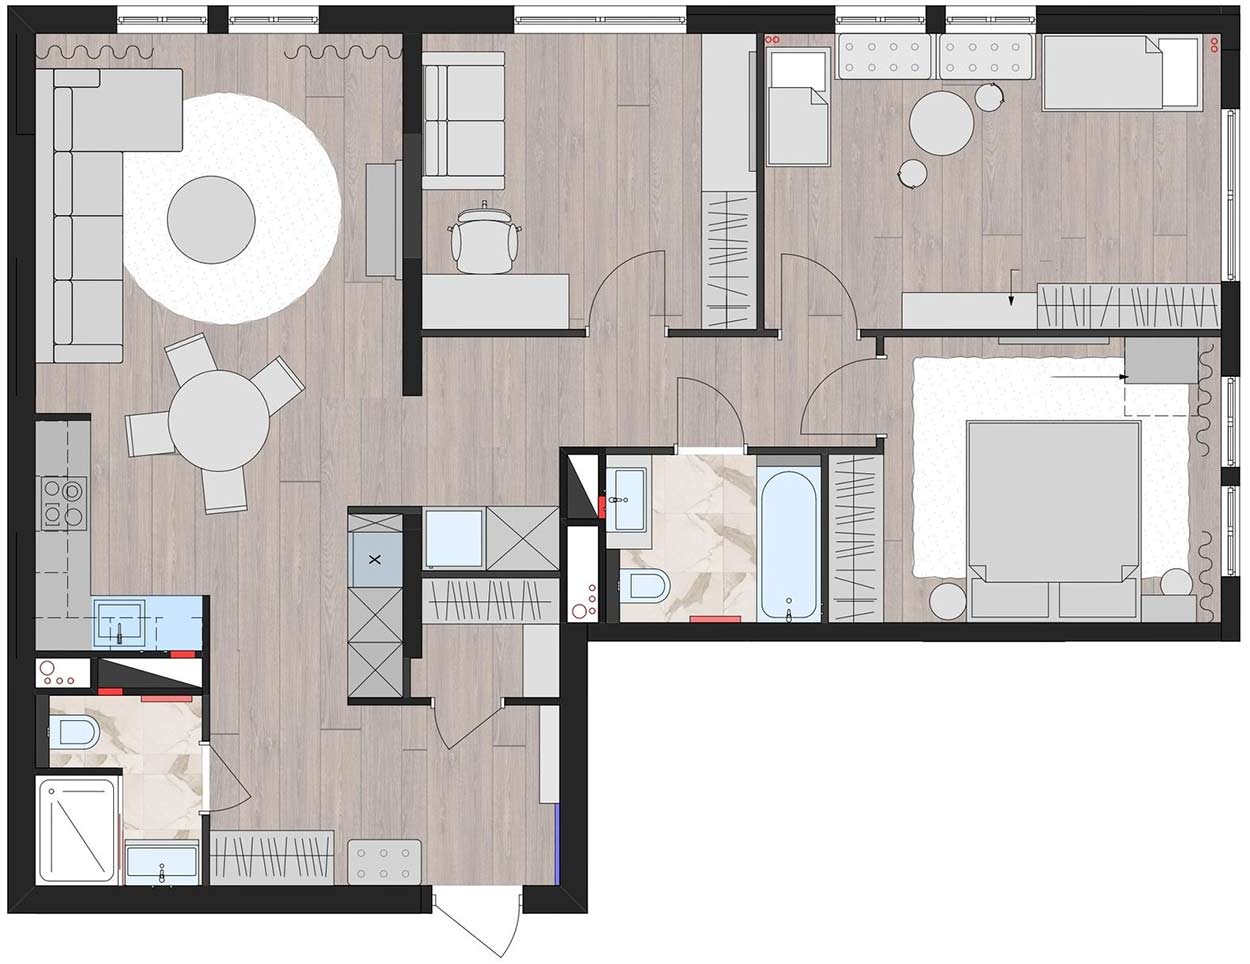 Visszafogott, otthonos elegancia négyszobás lakásban - modern klasszikus lakberendezés 94m2-en